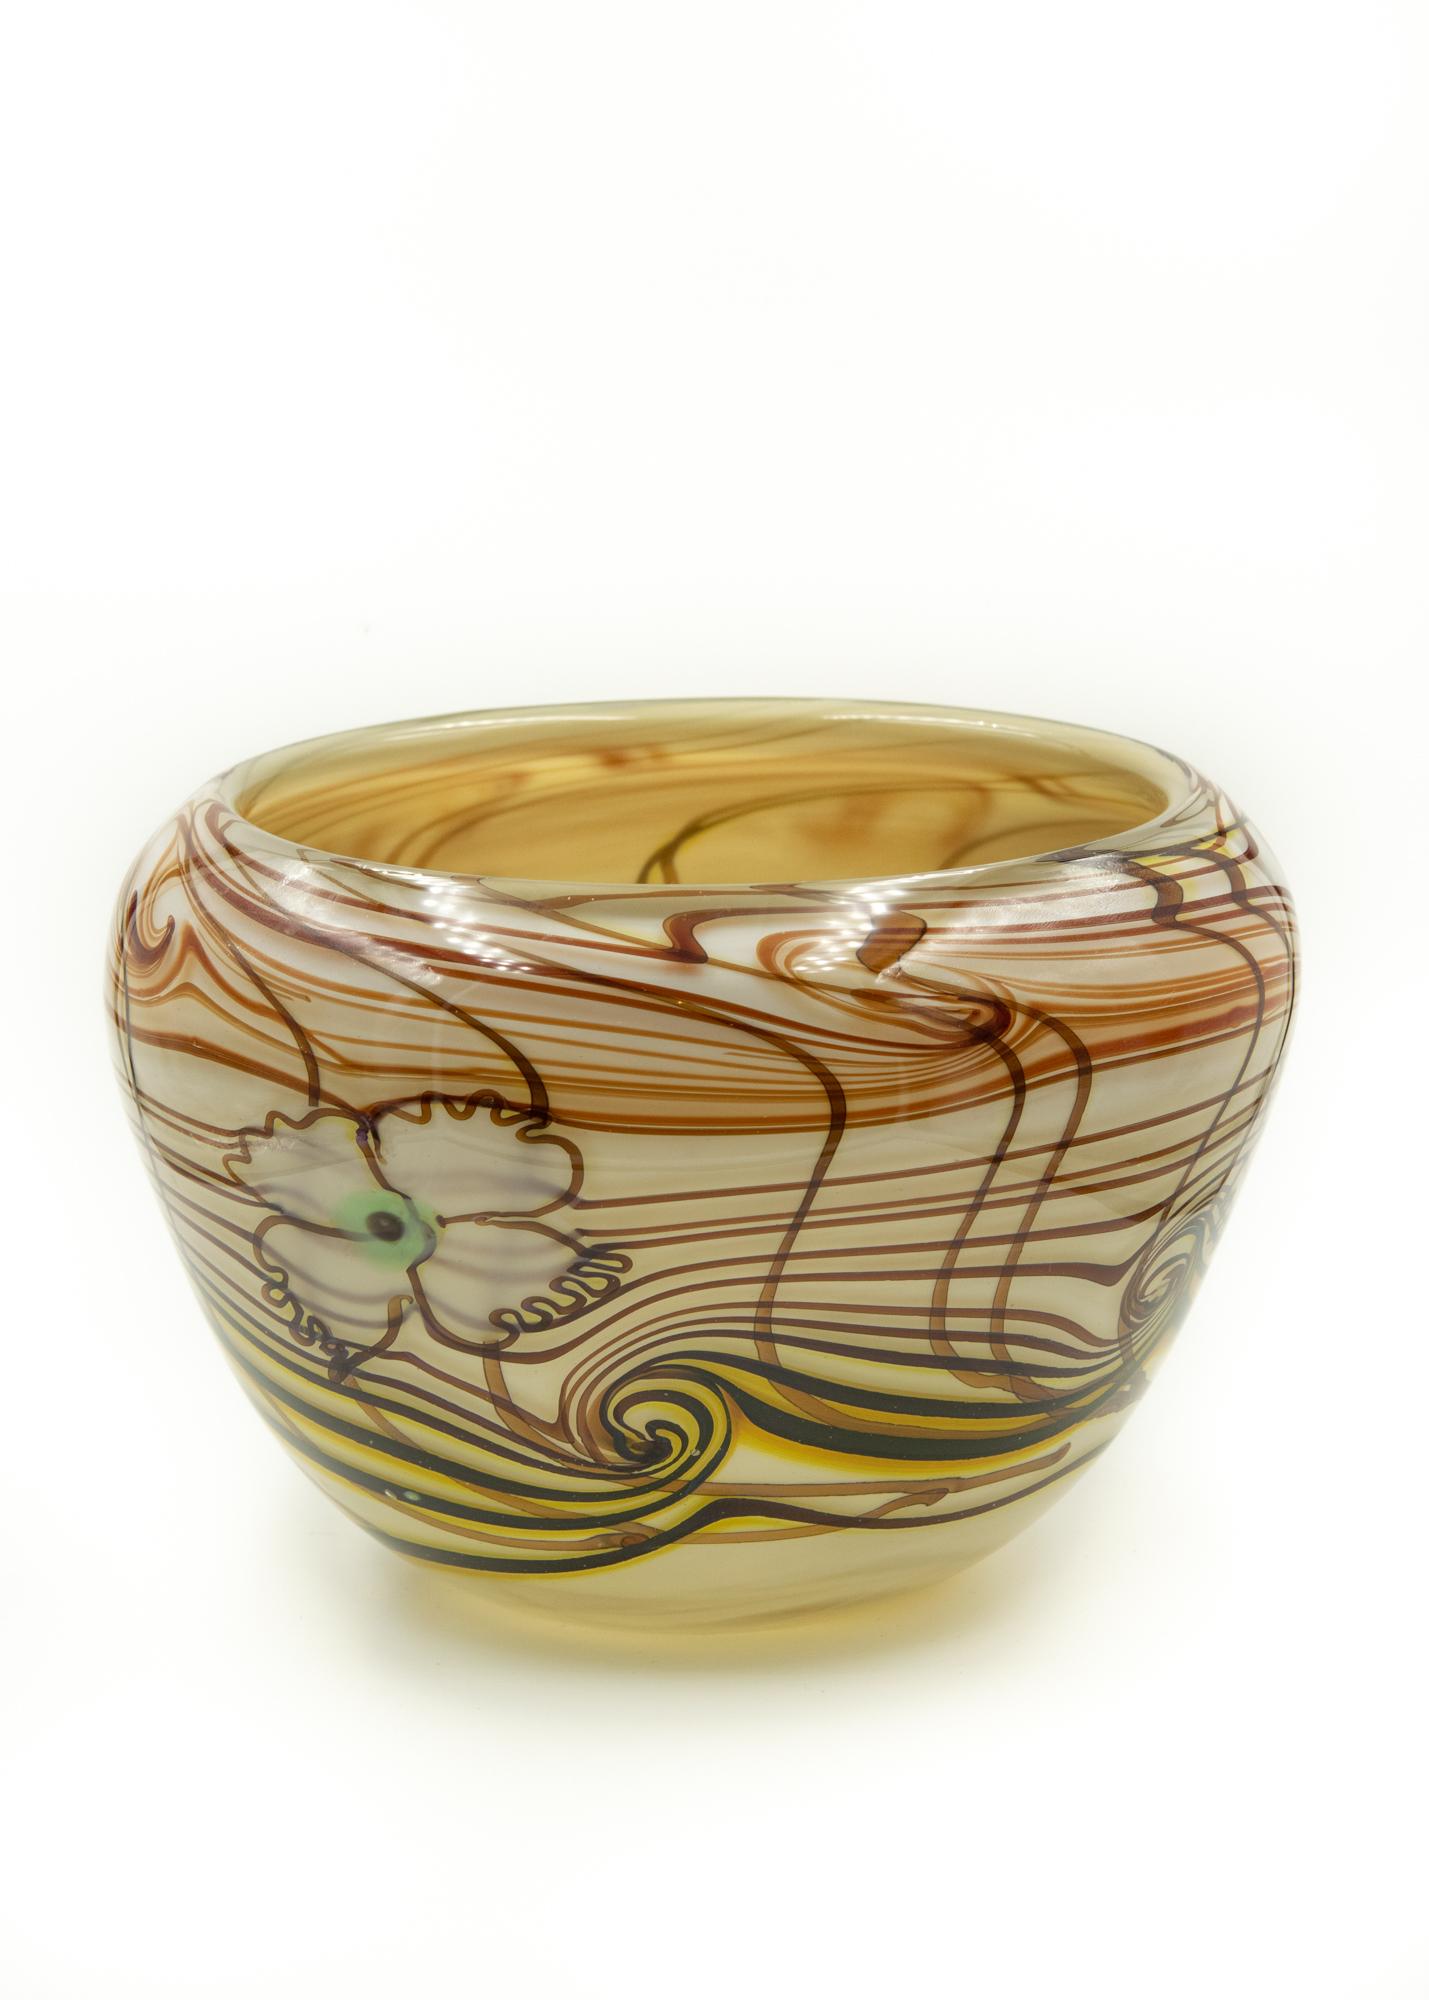 Beautiful Daniel elder art glass vase 